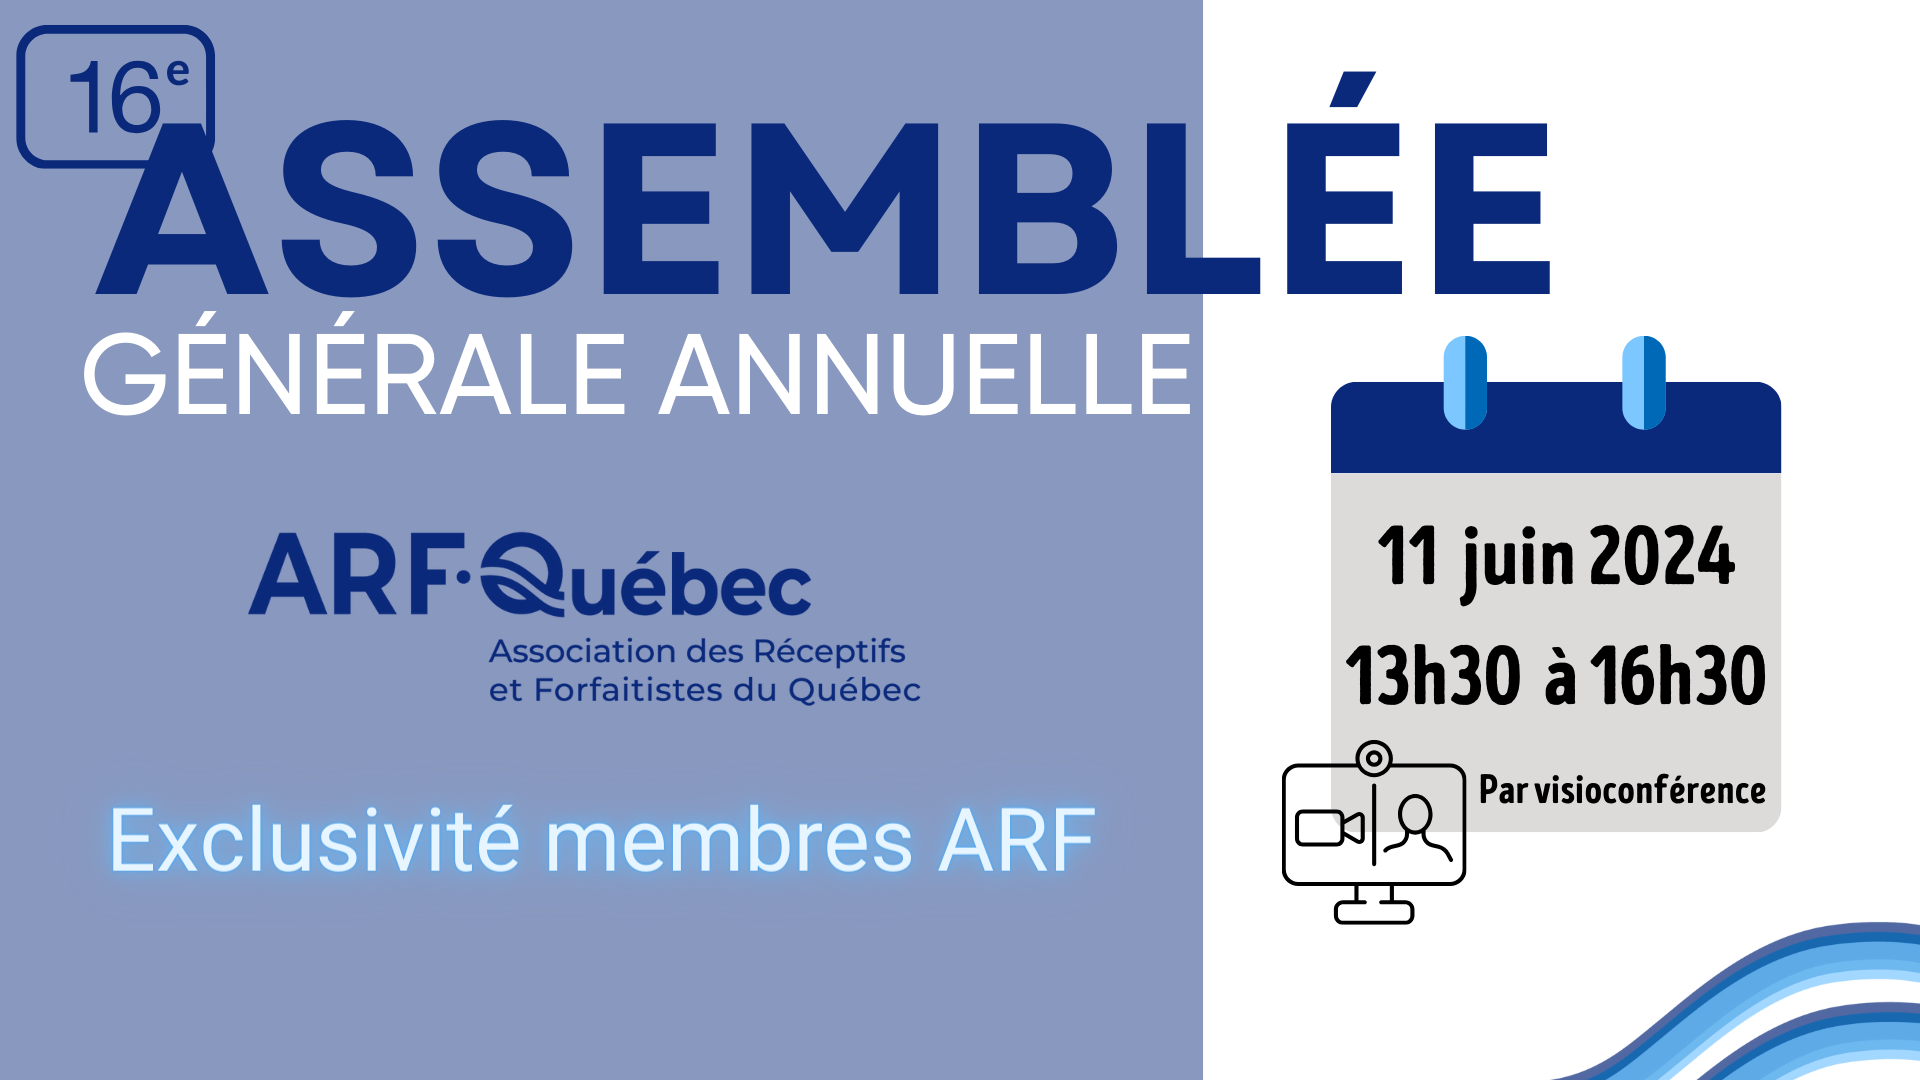 16e Assemblée Générale Annuelle - ARF-Québec